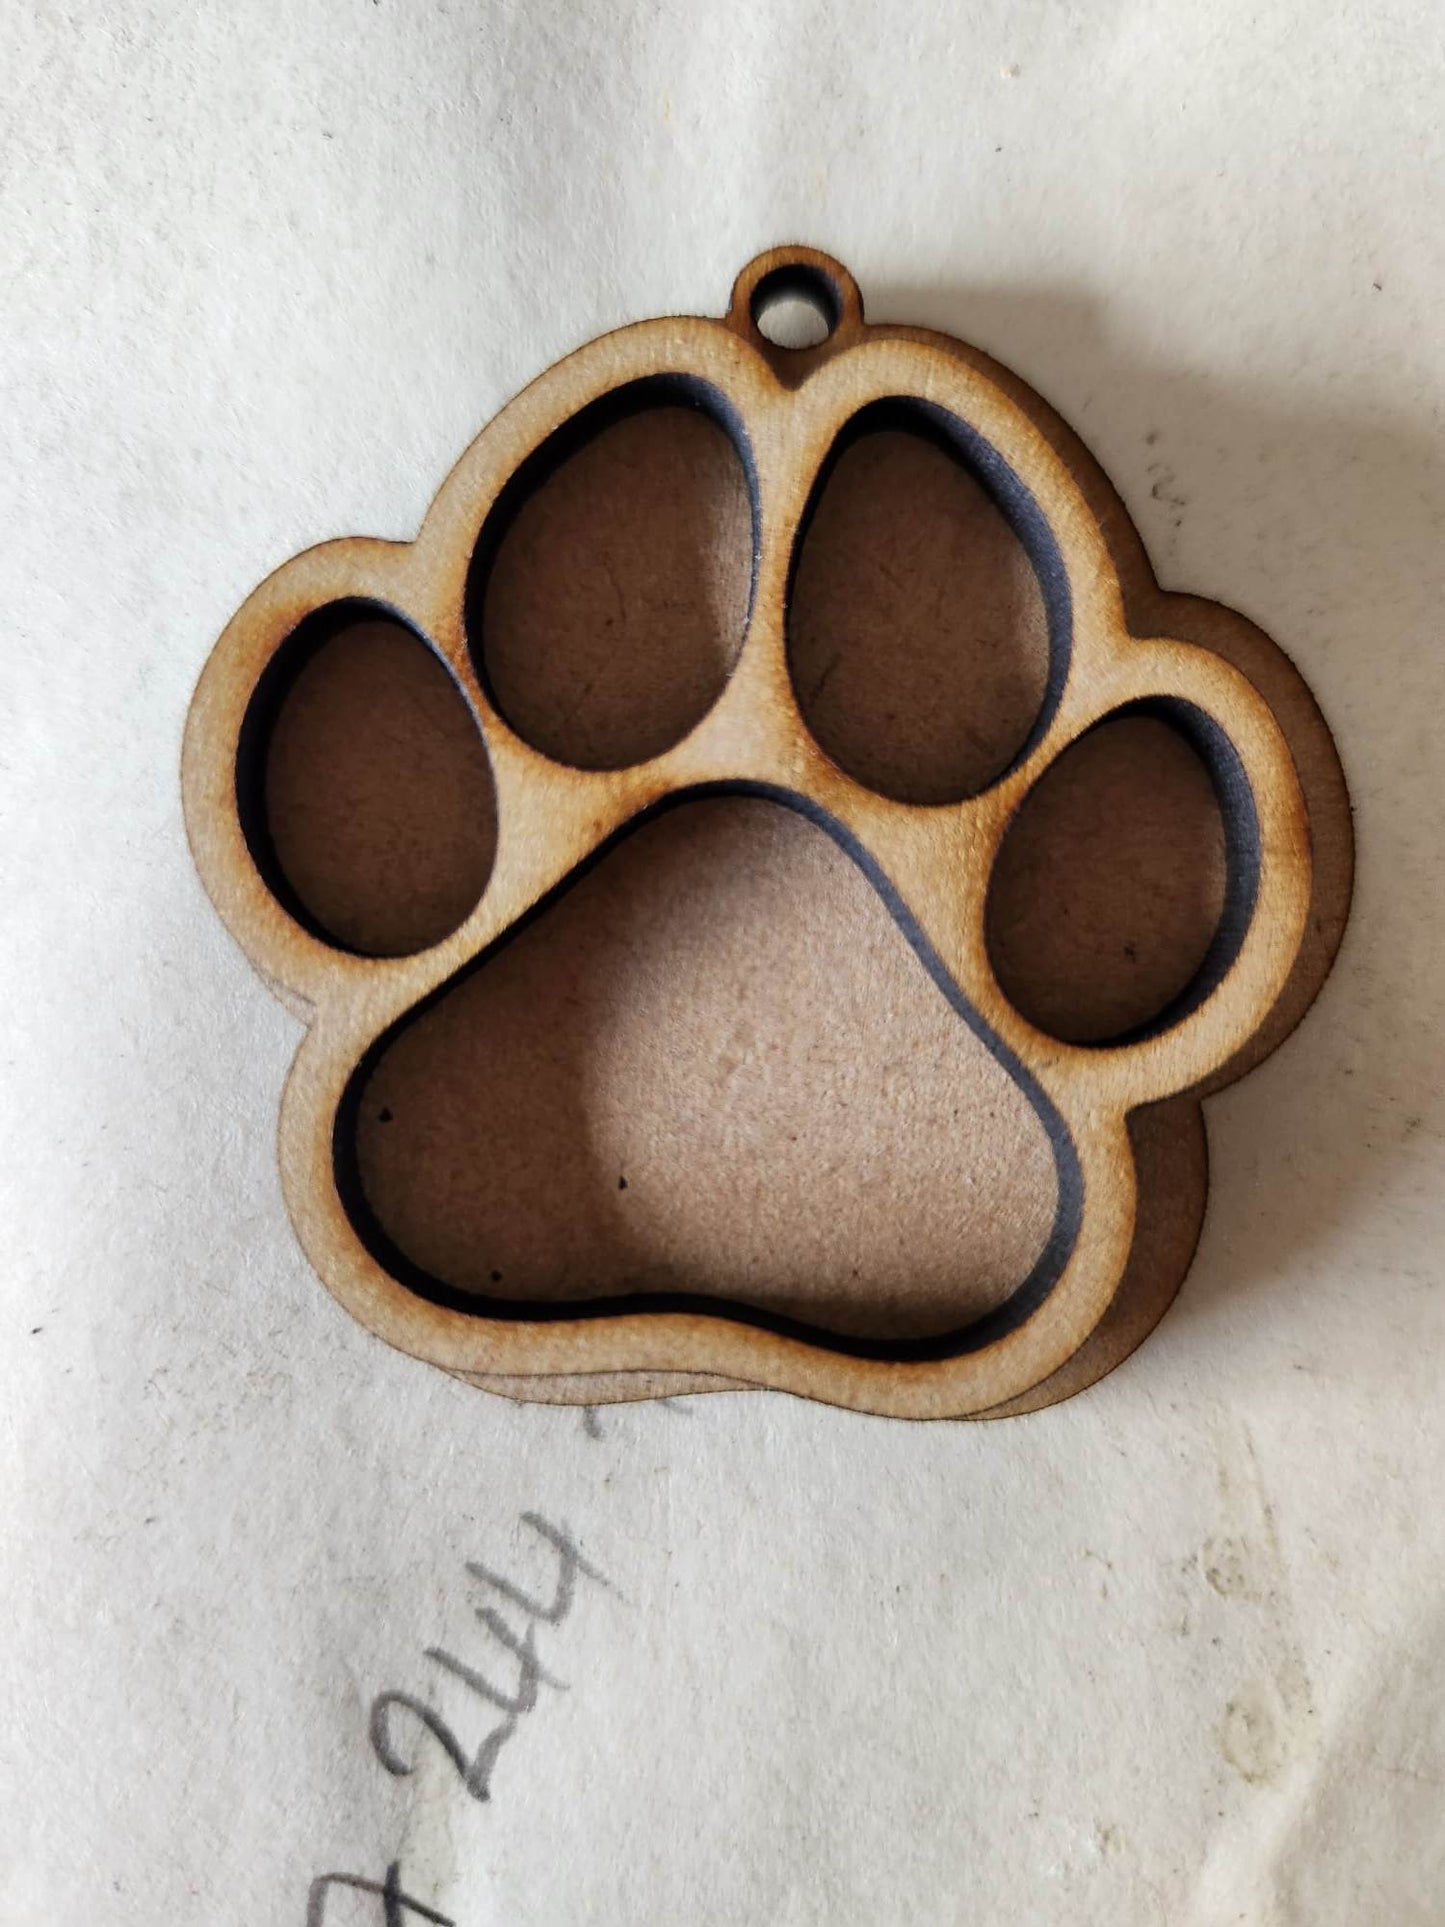 Dog Paw with hole